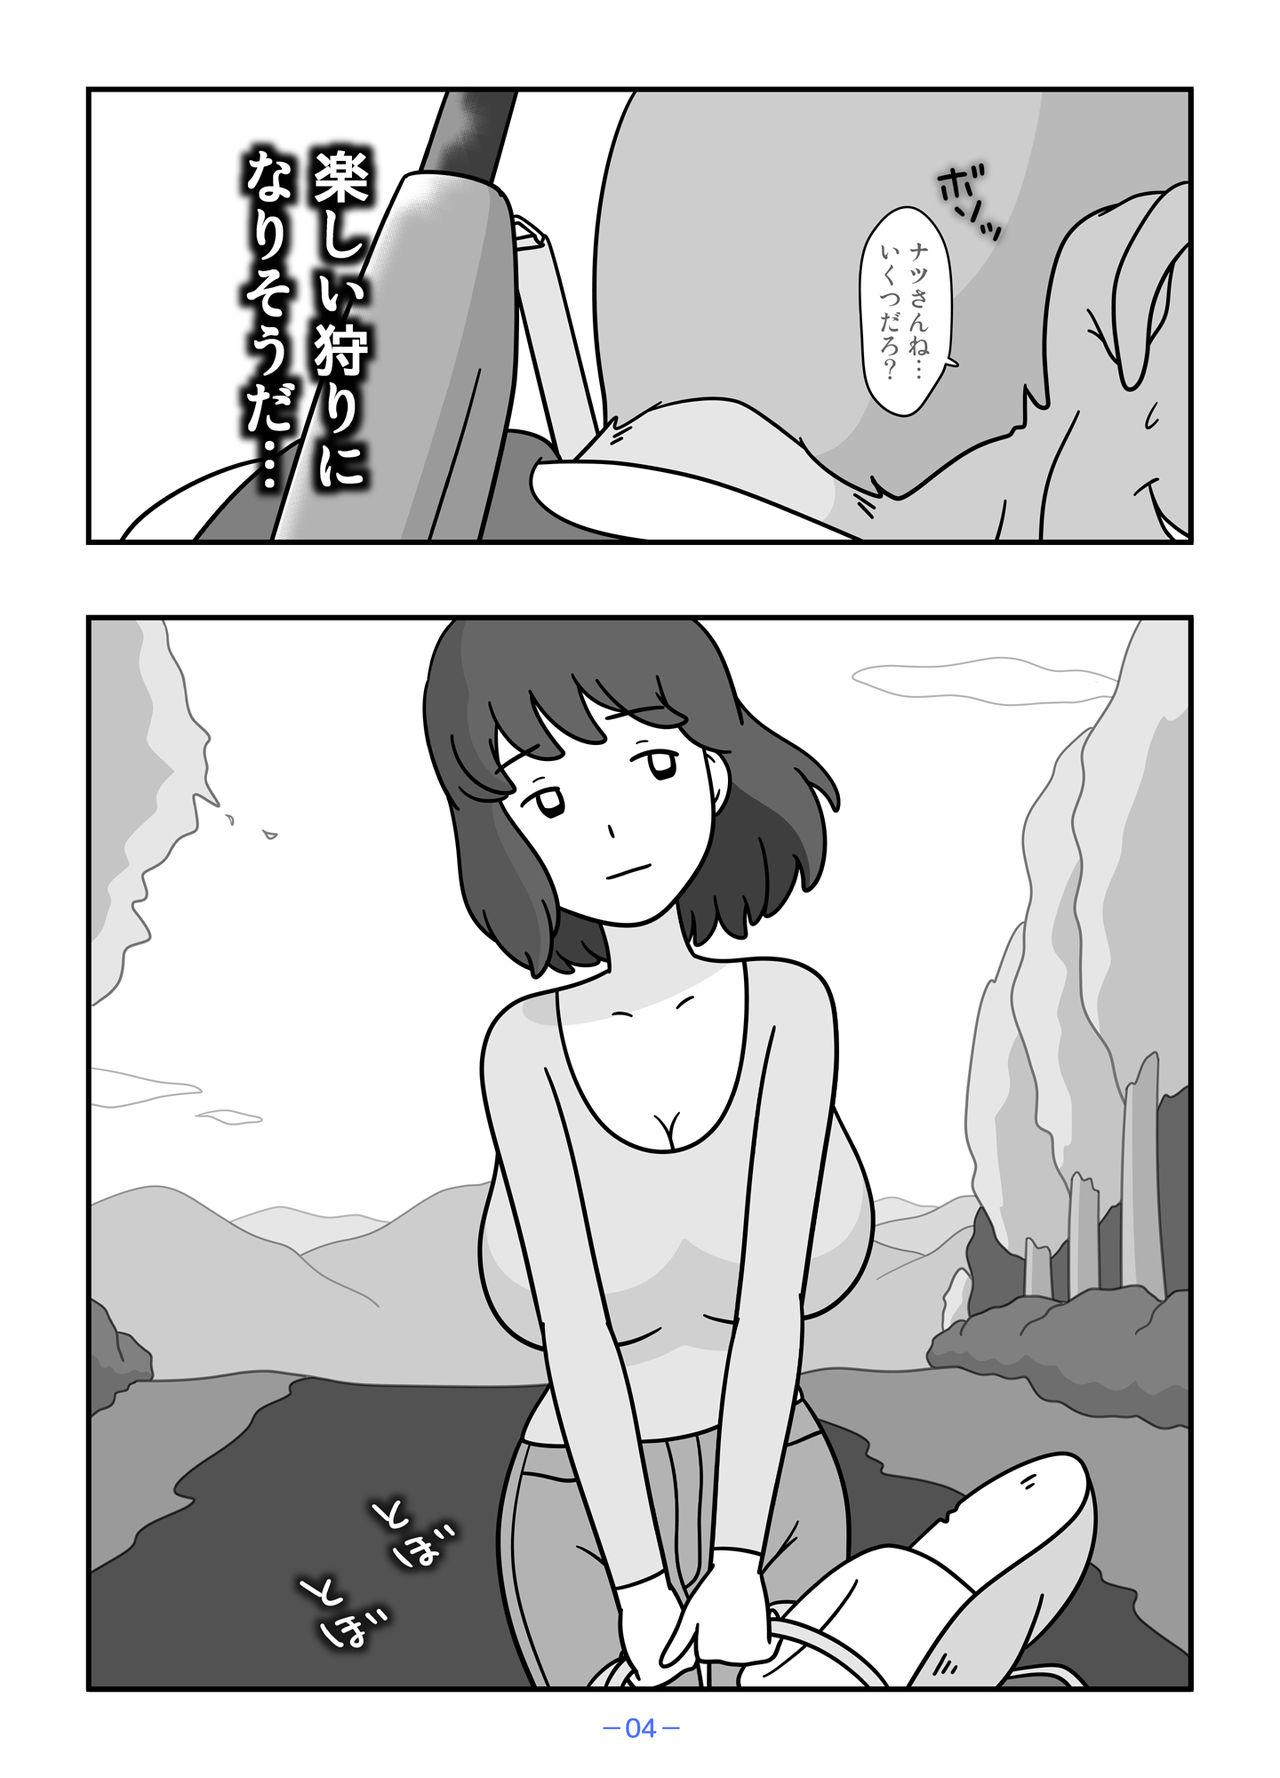 Outside Jinrou no Haha Natsu - Original Long - Page 4